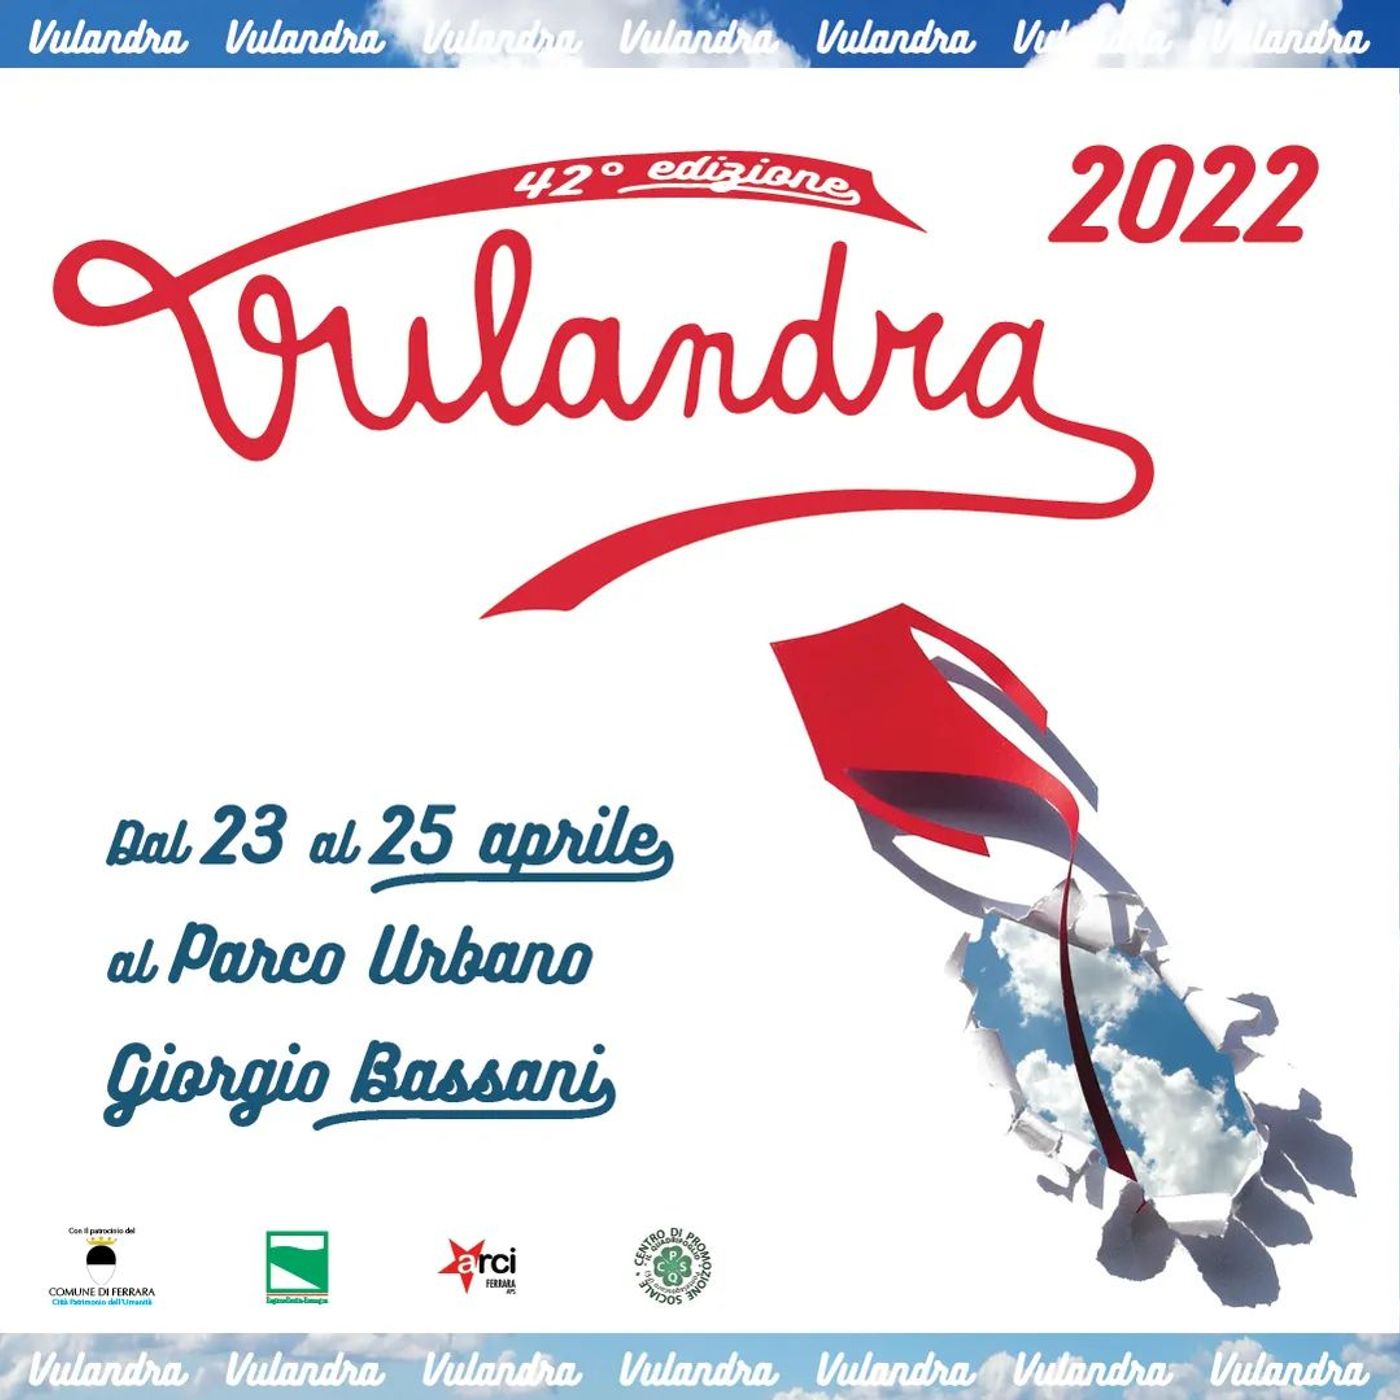 VULANDRA: si torna a volare con il festival degli aquiloni di Ferrara - s02e13